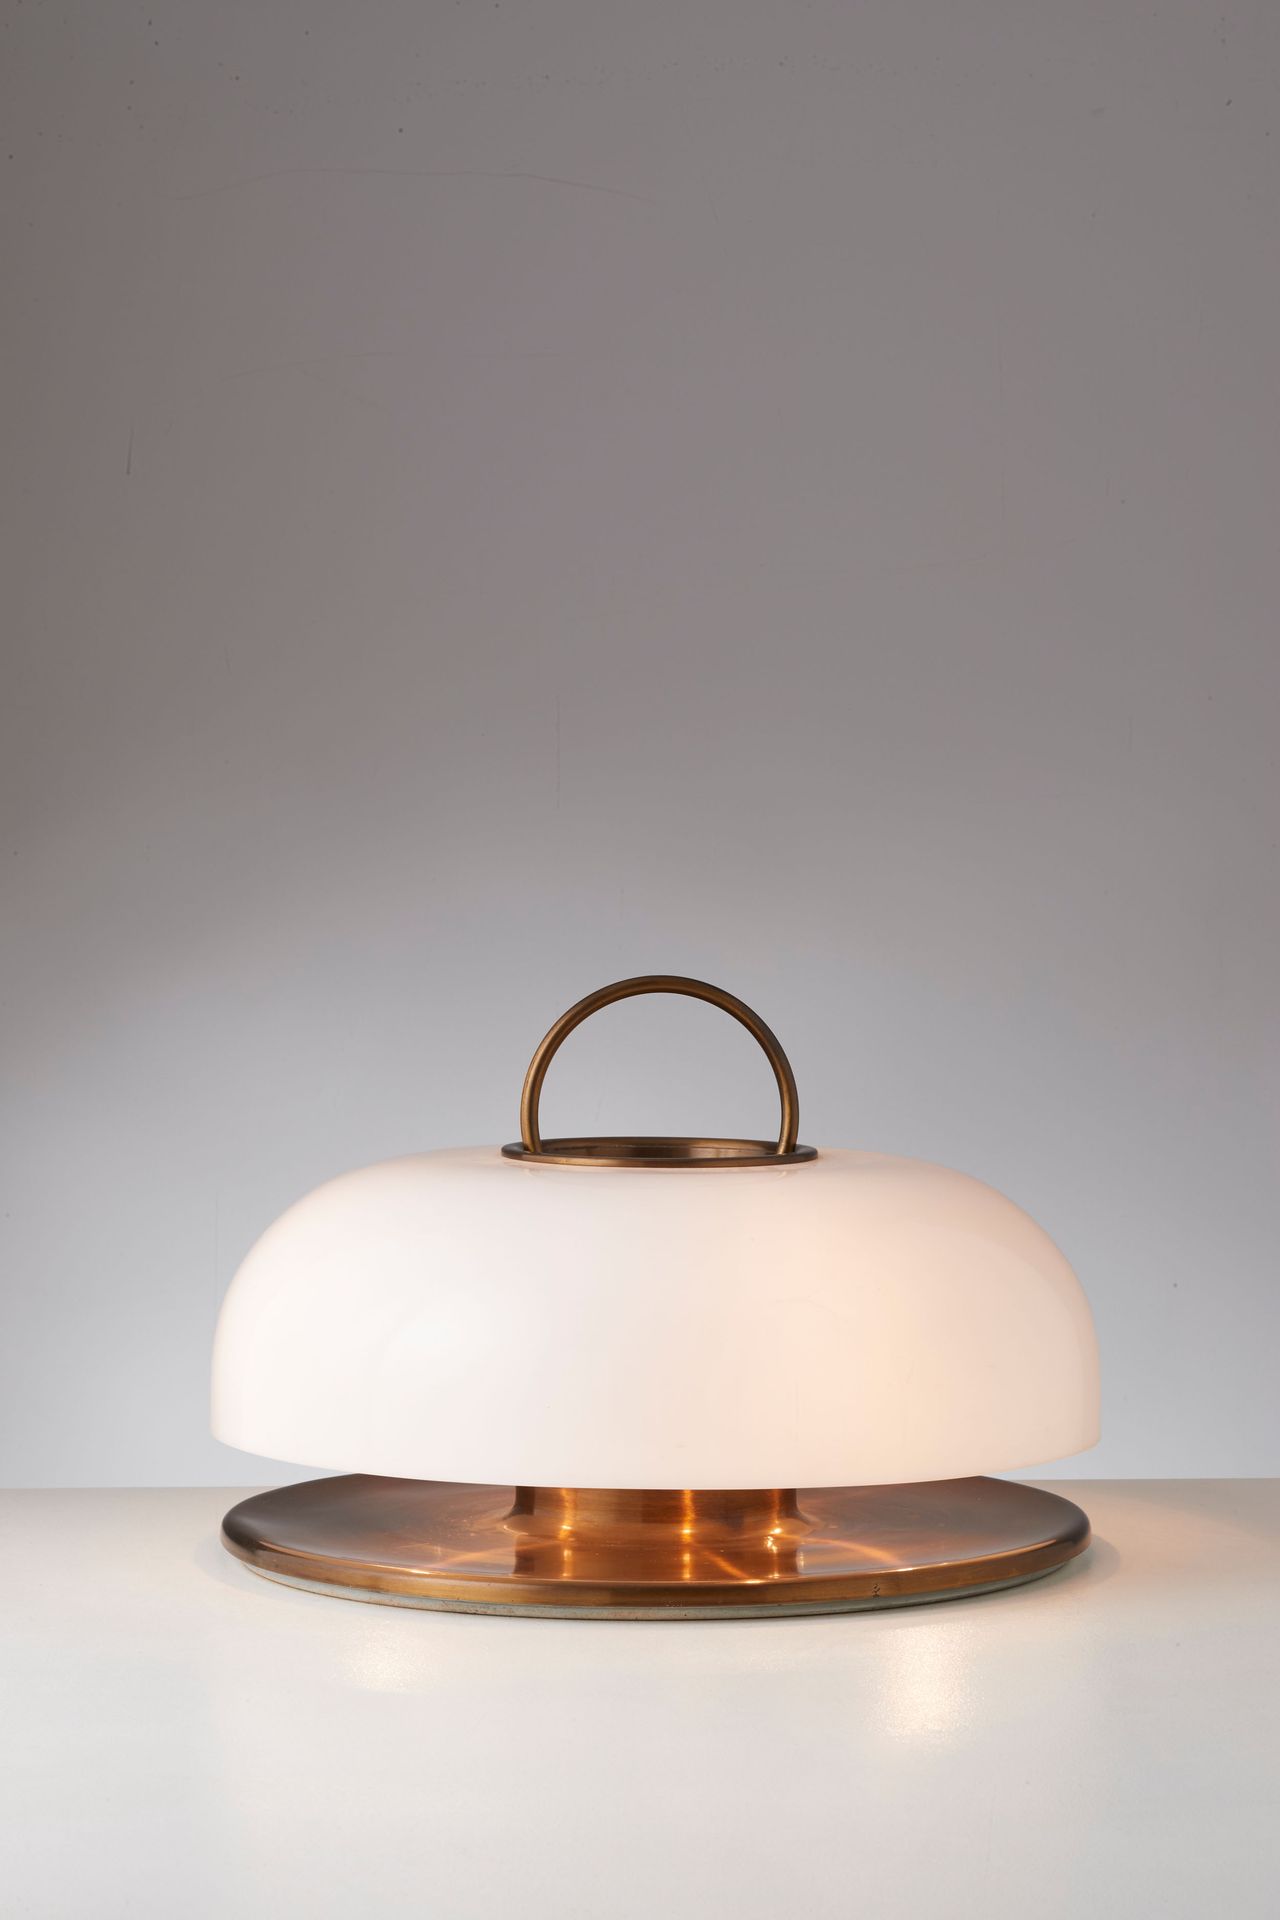 Manifattura Italiana Lampada da tavolo ottone, perspex opalino. Italia anni '60.&hellip;